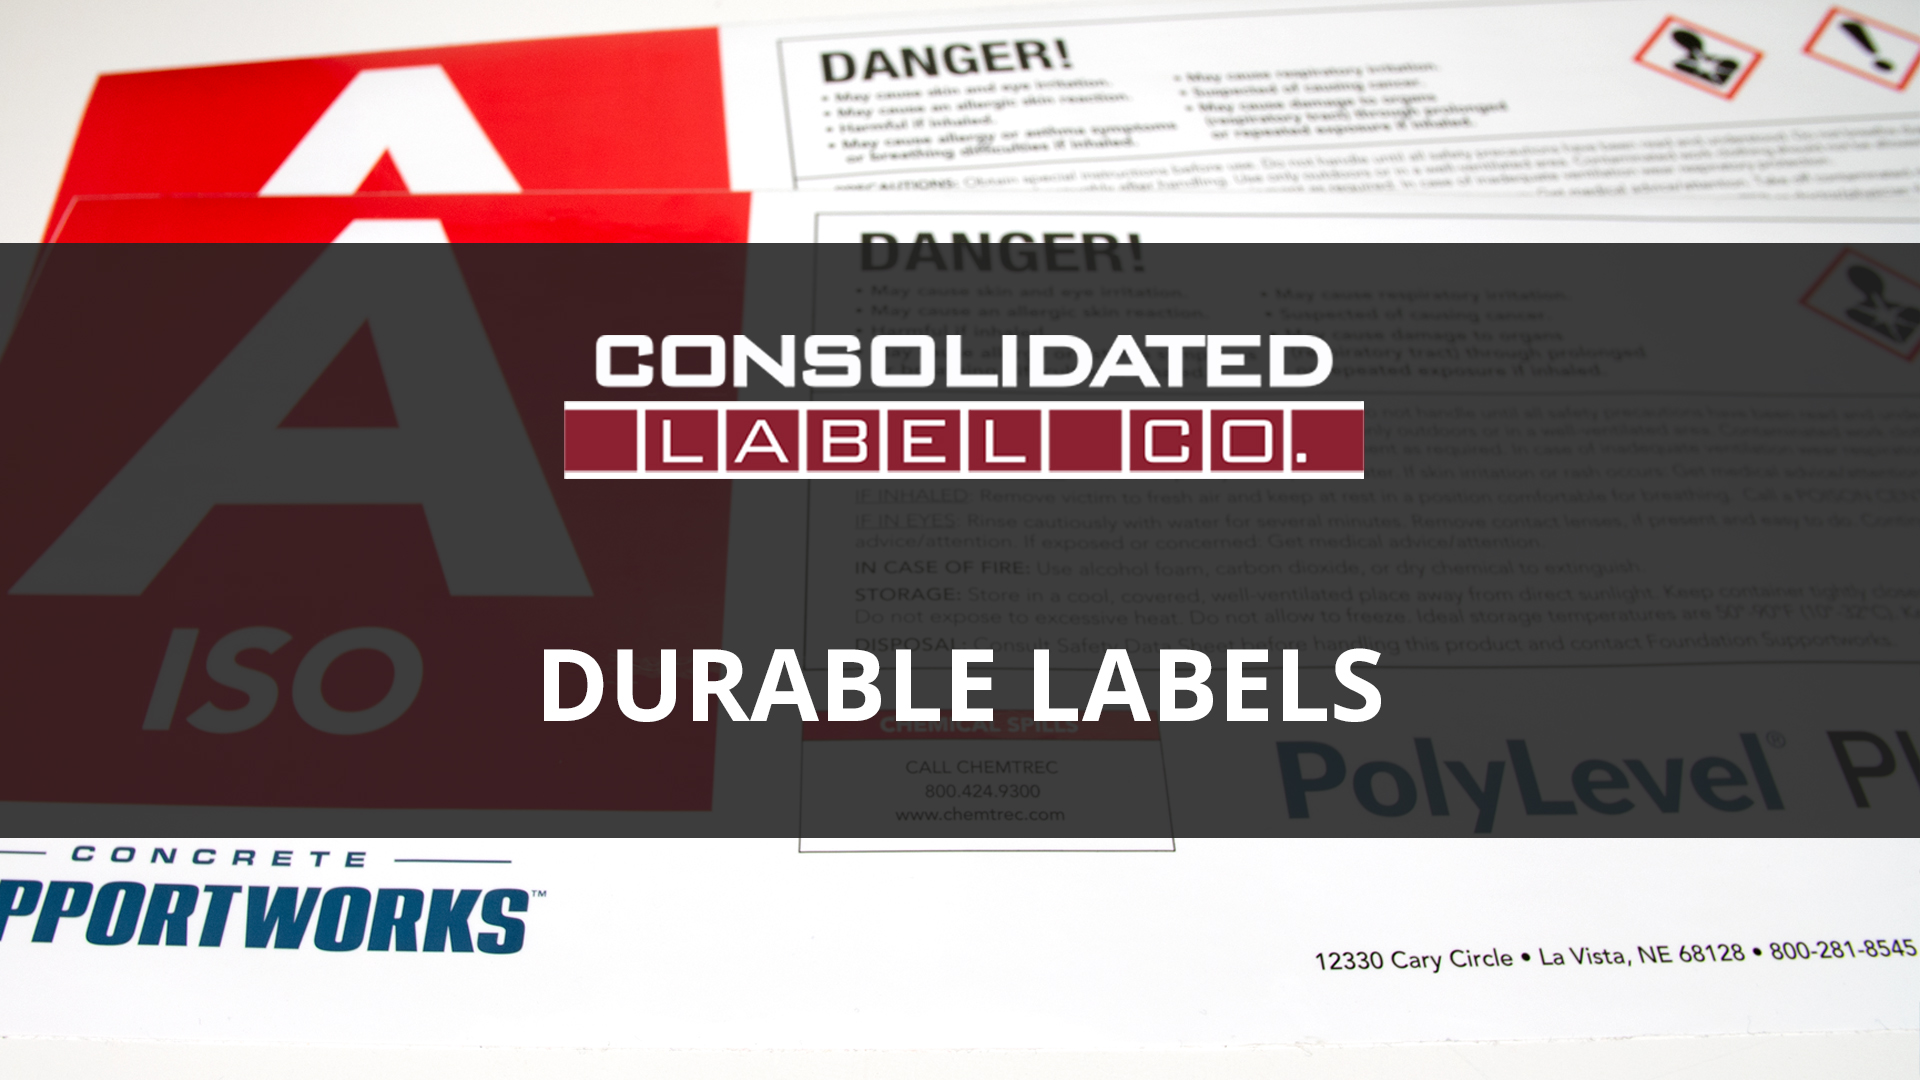 durable labels